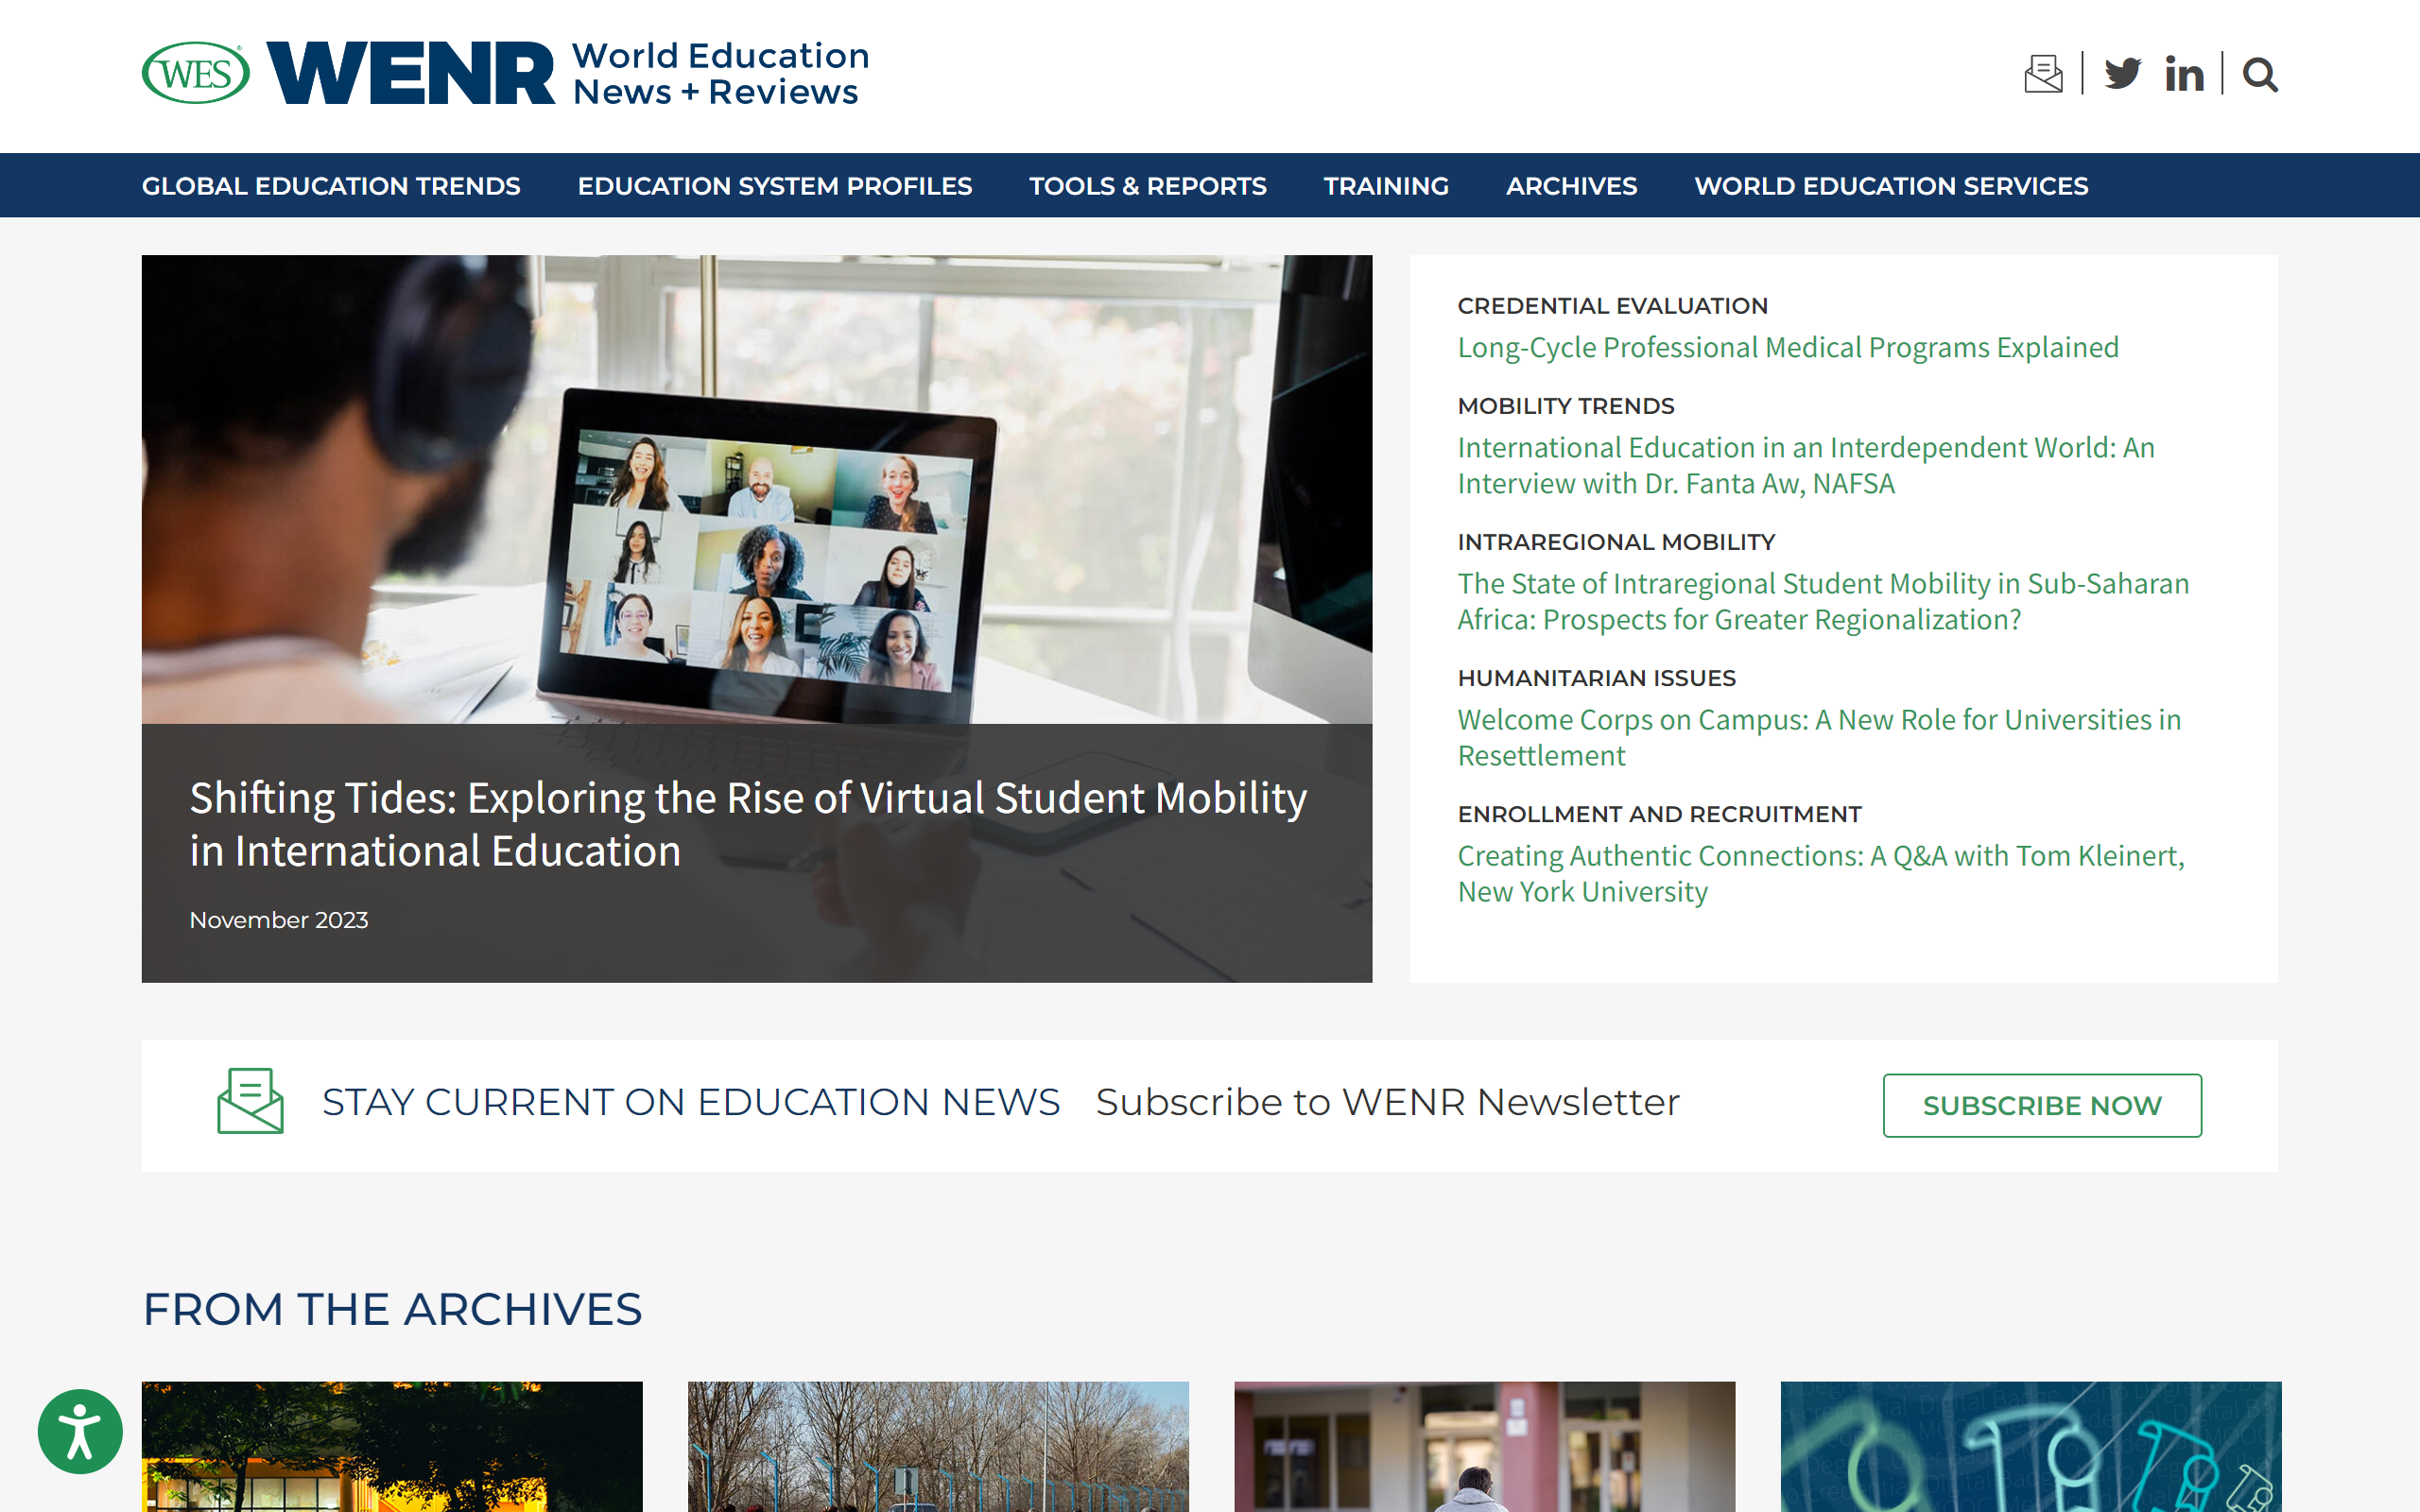 World Education News + Reviews teacher blog